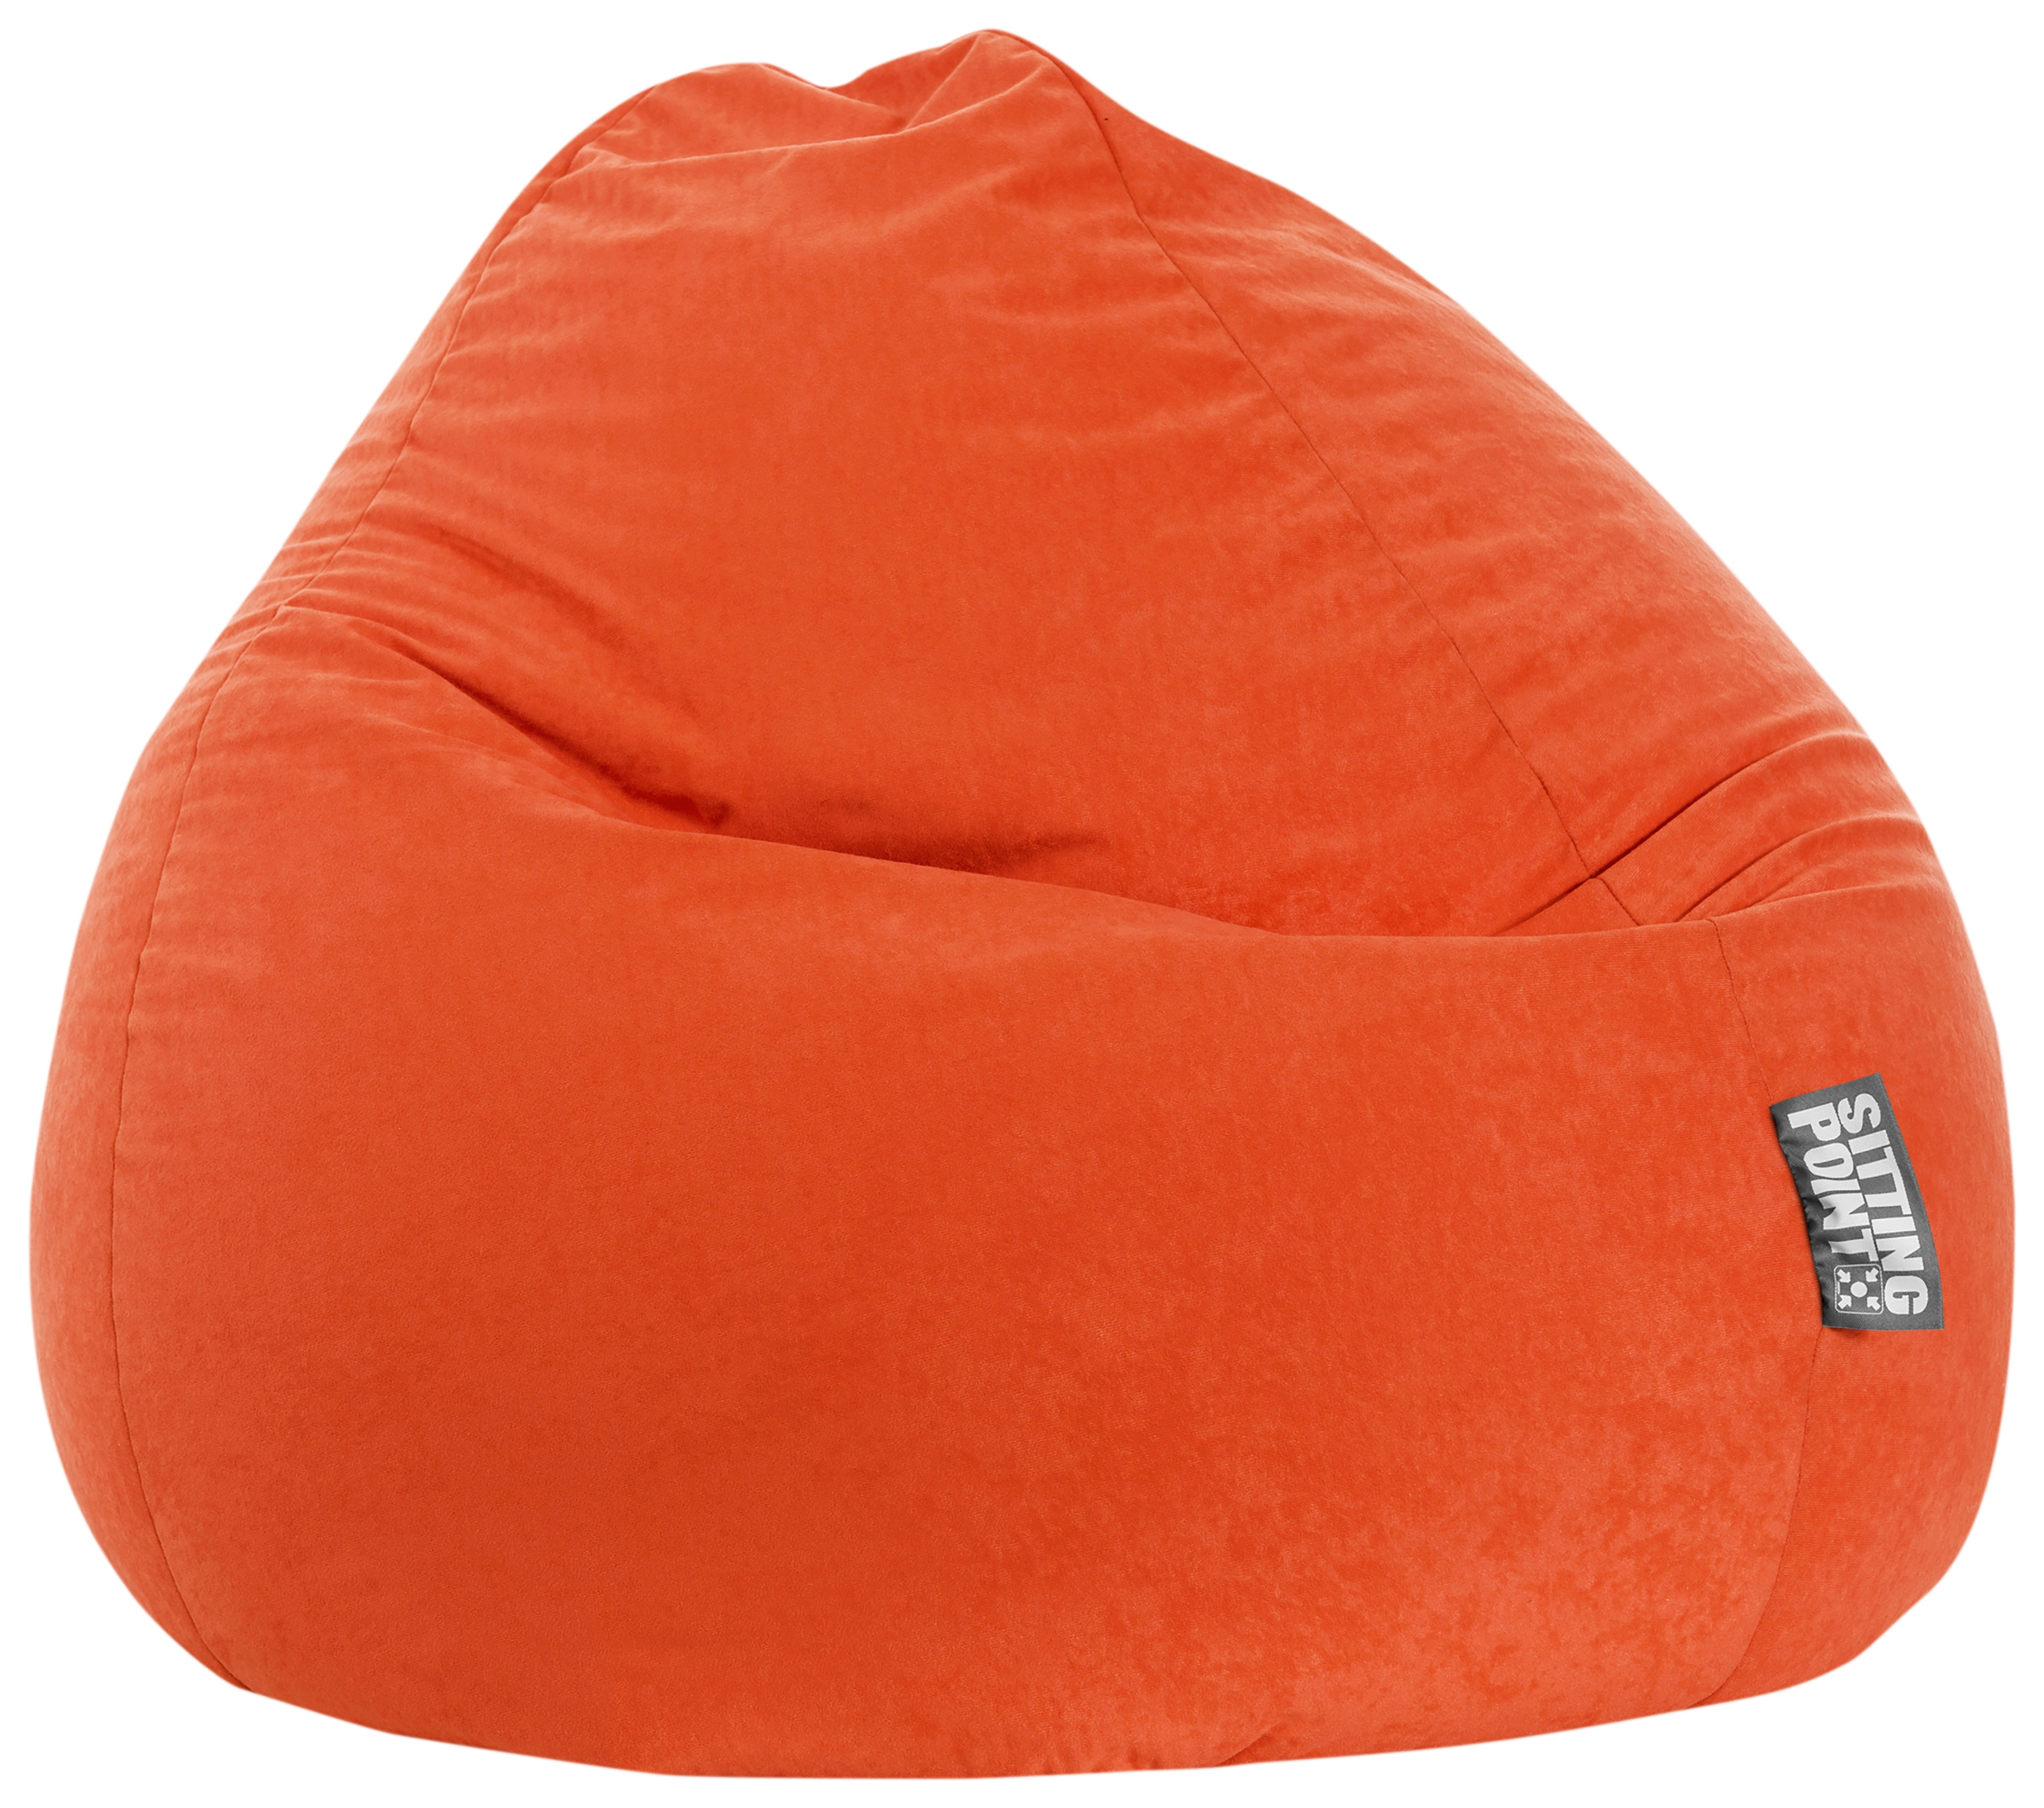 300 Point Sitzsack Orange OBI bei Easy Sitting l kaufen